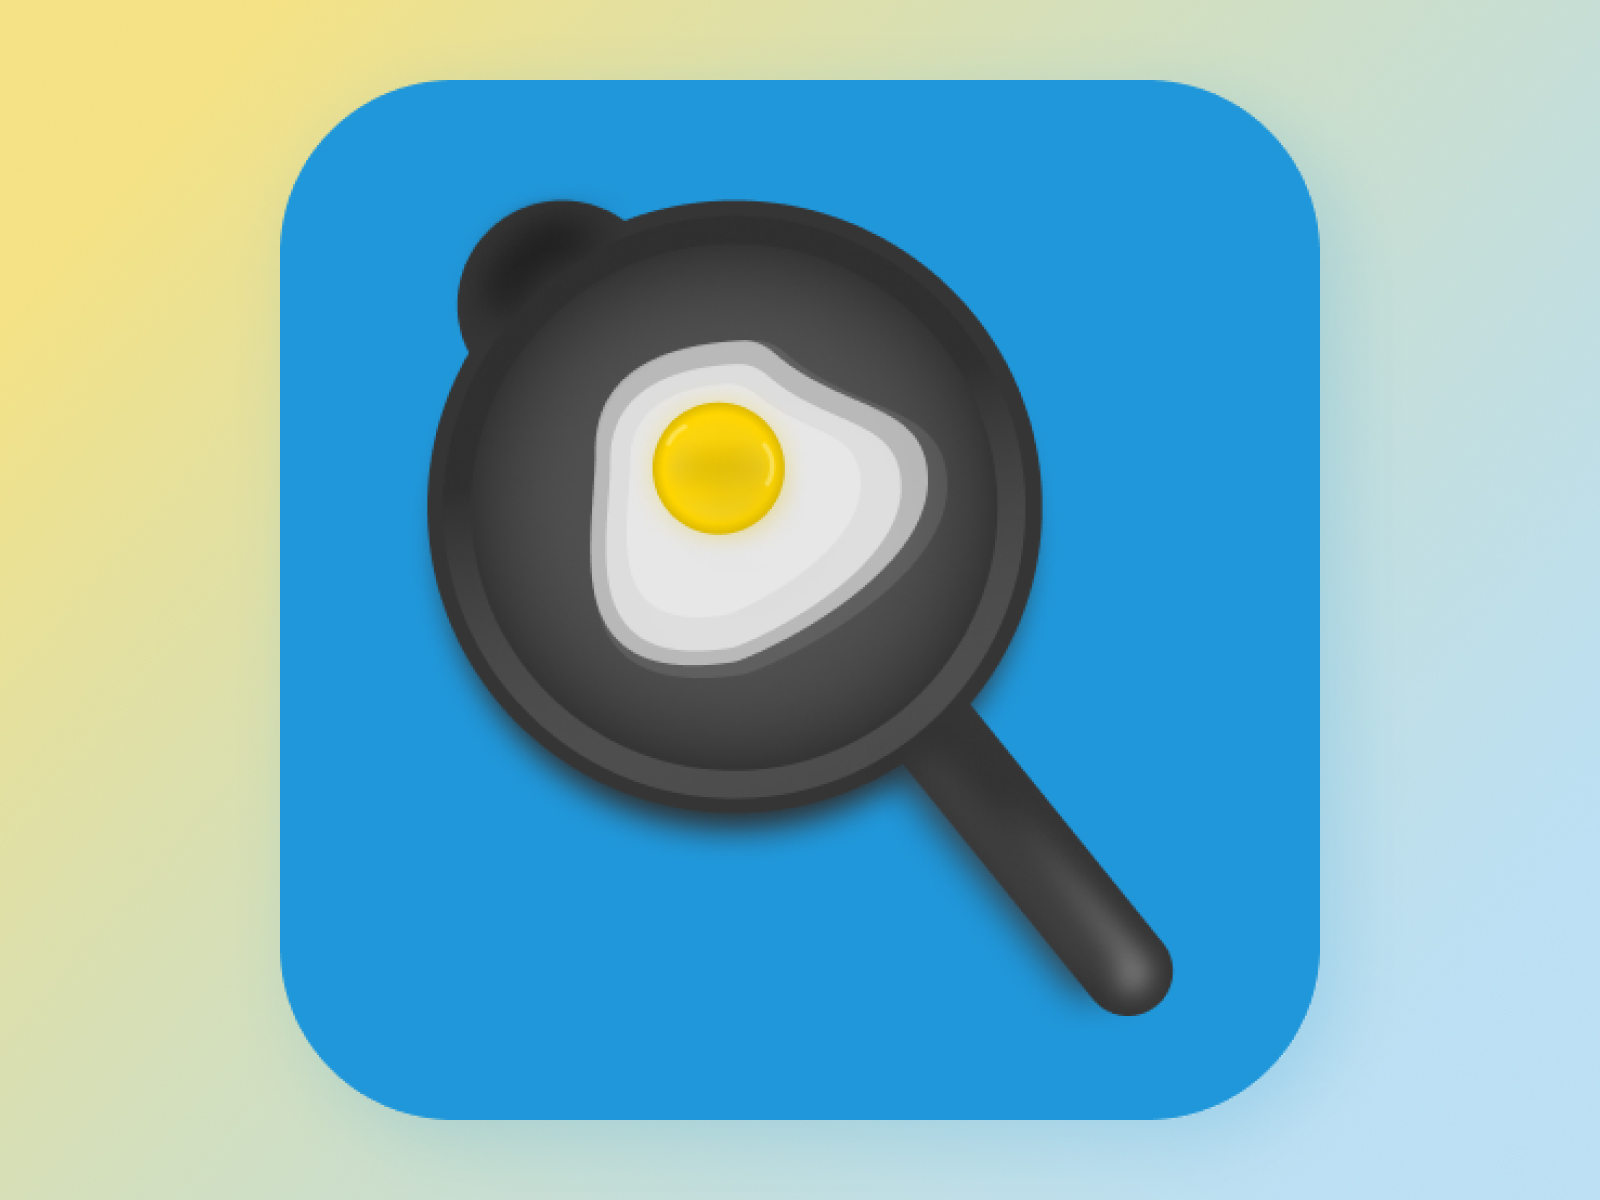 Omelette (Recipe App Icon) by Mohammed Umer Ashik on Dribbble